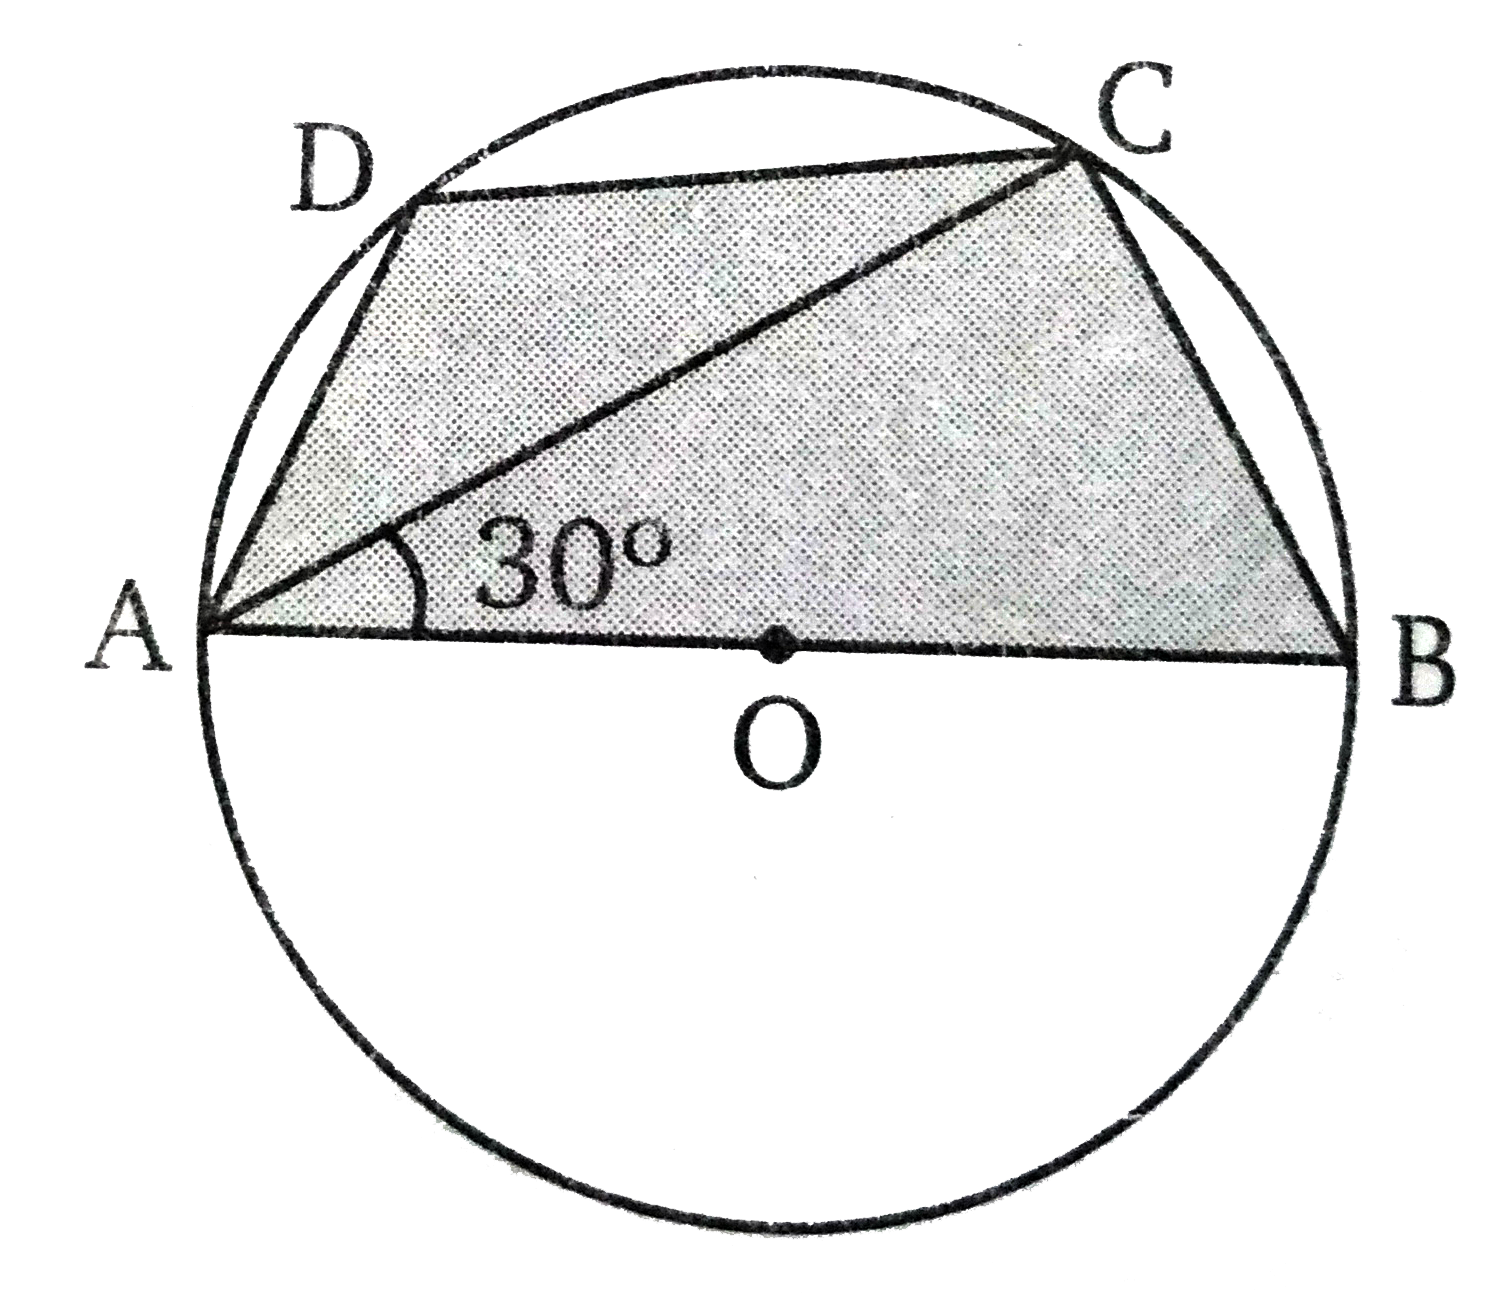 चित्र में ABCD एक चक्रीय चतुर्भुज है तथा  वृत्त  का केन्द्र O है। AB वृत्त  का व्यास है। यदि  angle BAC = 30 ^(@) तो angle ADC  का मान ज्ञात कीजिए।